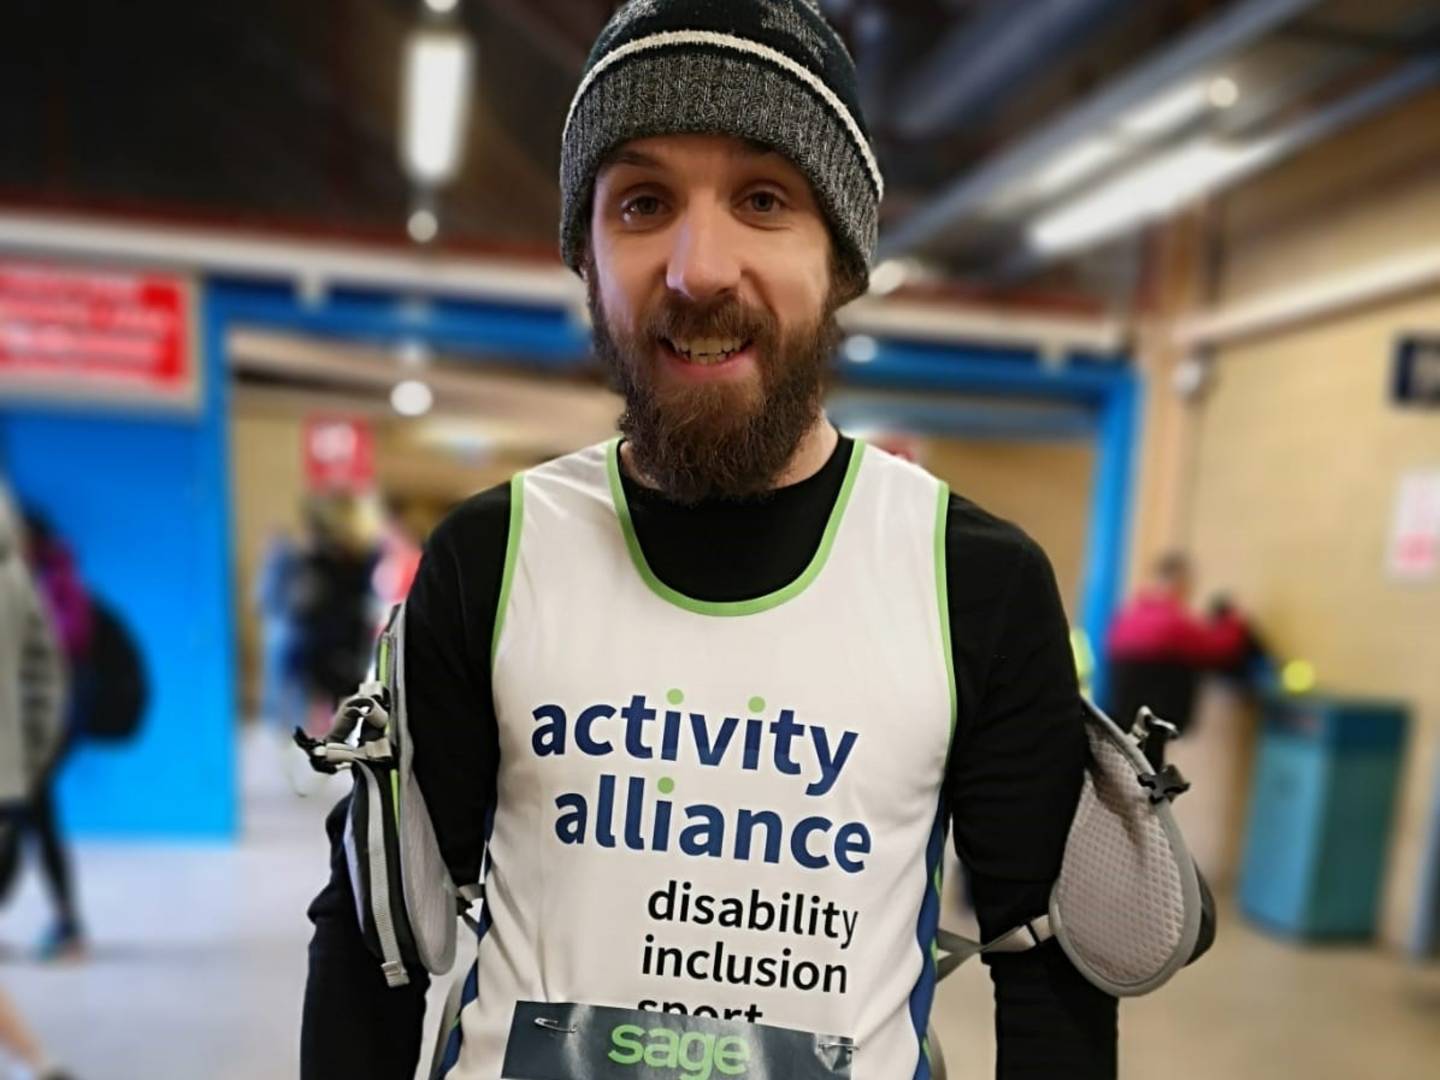 Chris Hewitson at Reading Half Marathon 2019 wearing Activity Alliance running vest